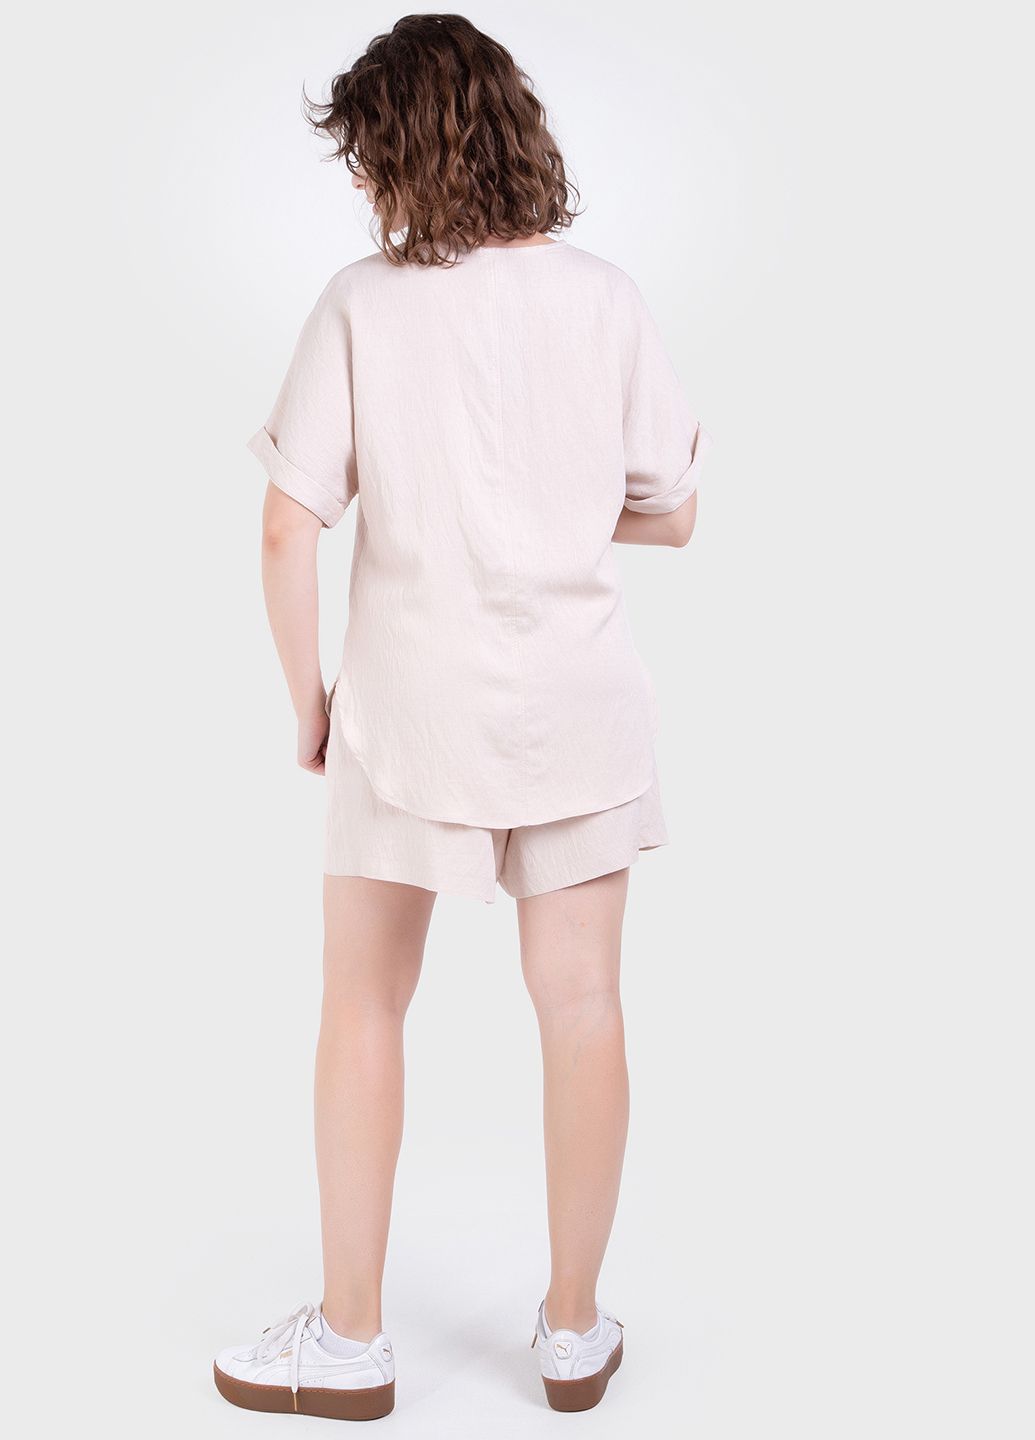 Купить Летний костюм женский двойка бежевого цвета: шорты, футболка Merlini Беневенто 100000141, размер 42-44 в интернет-магазине